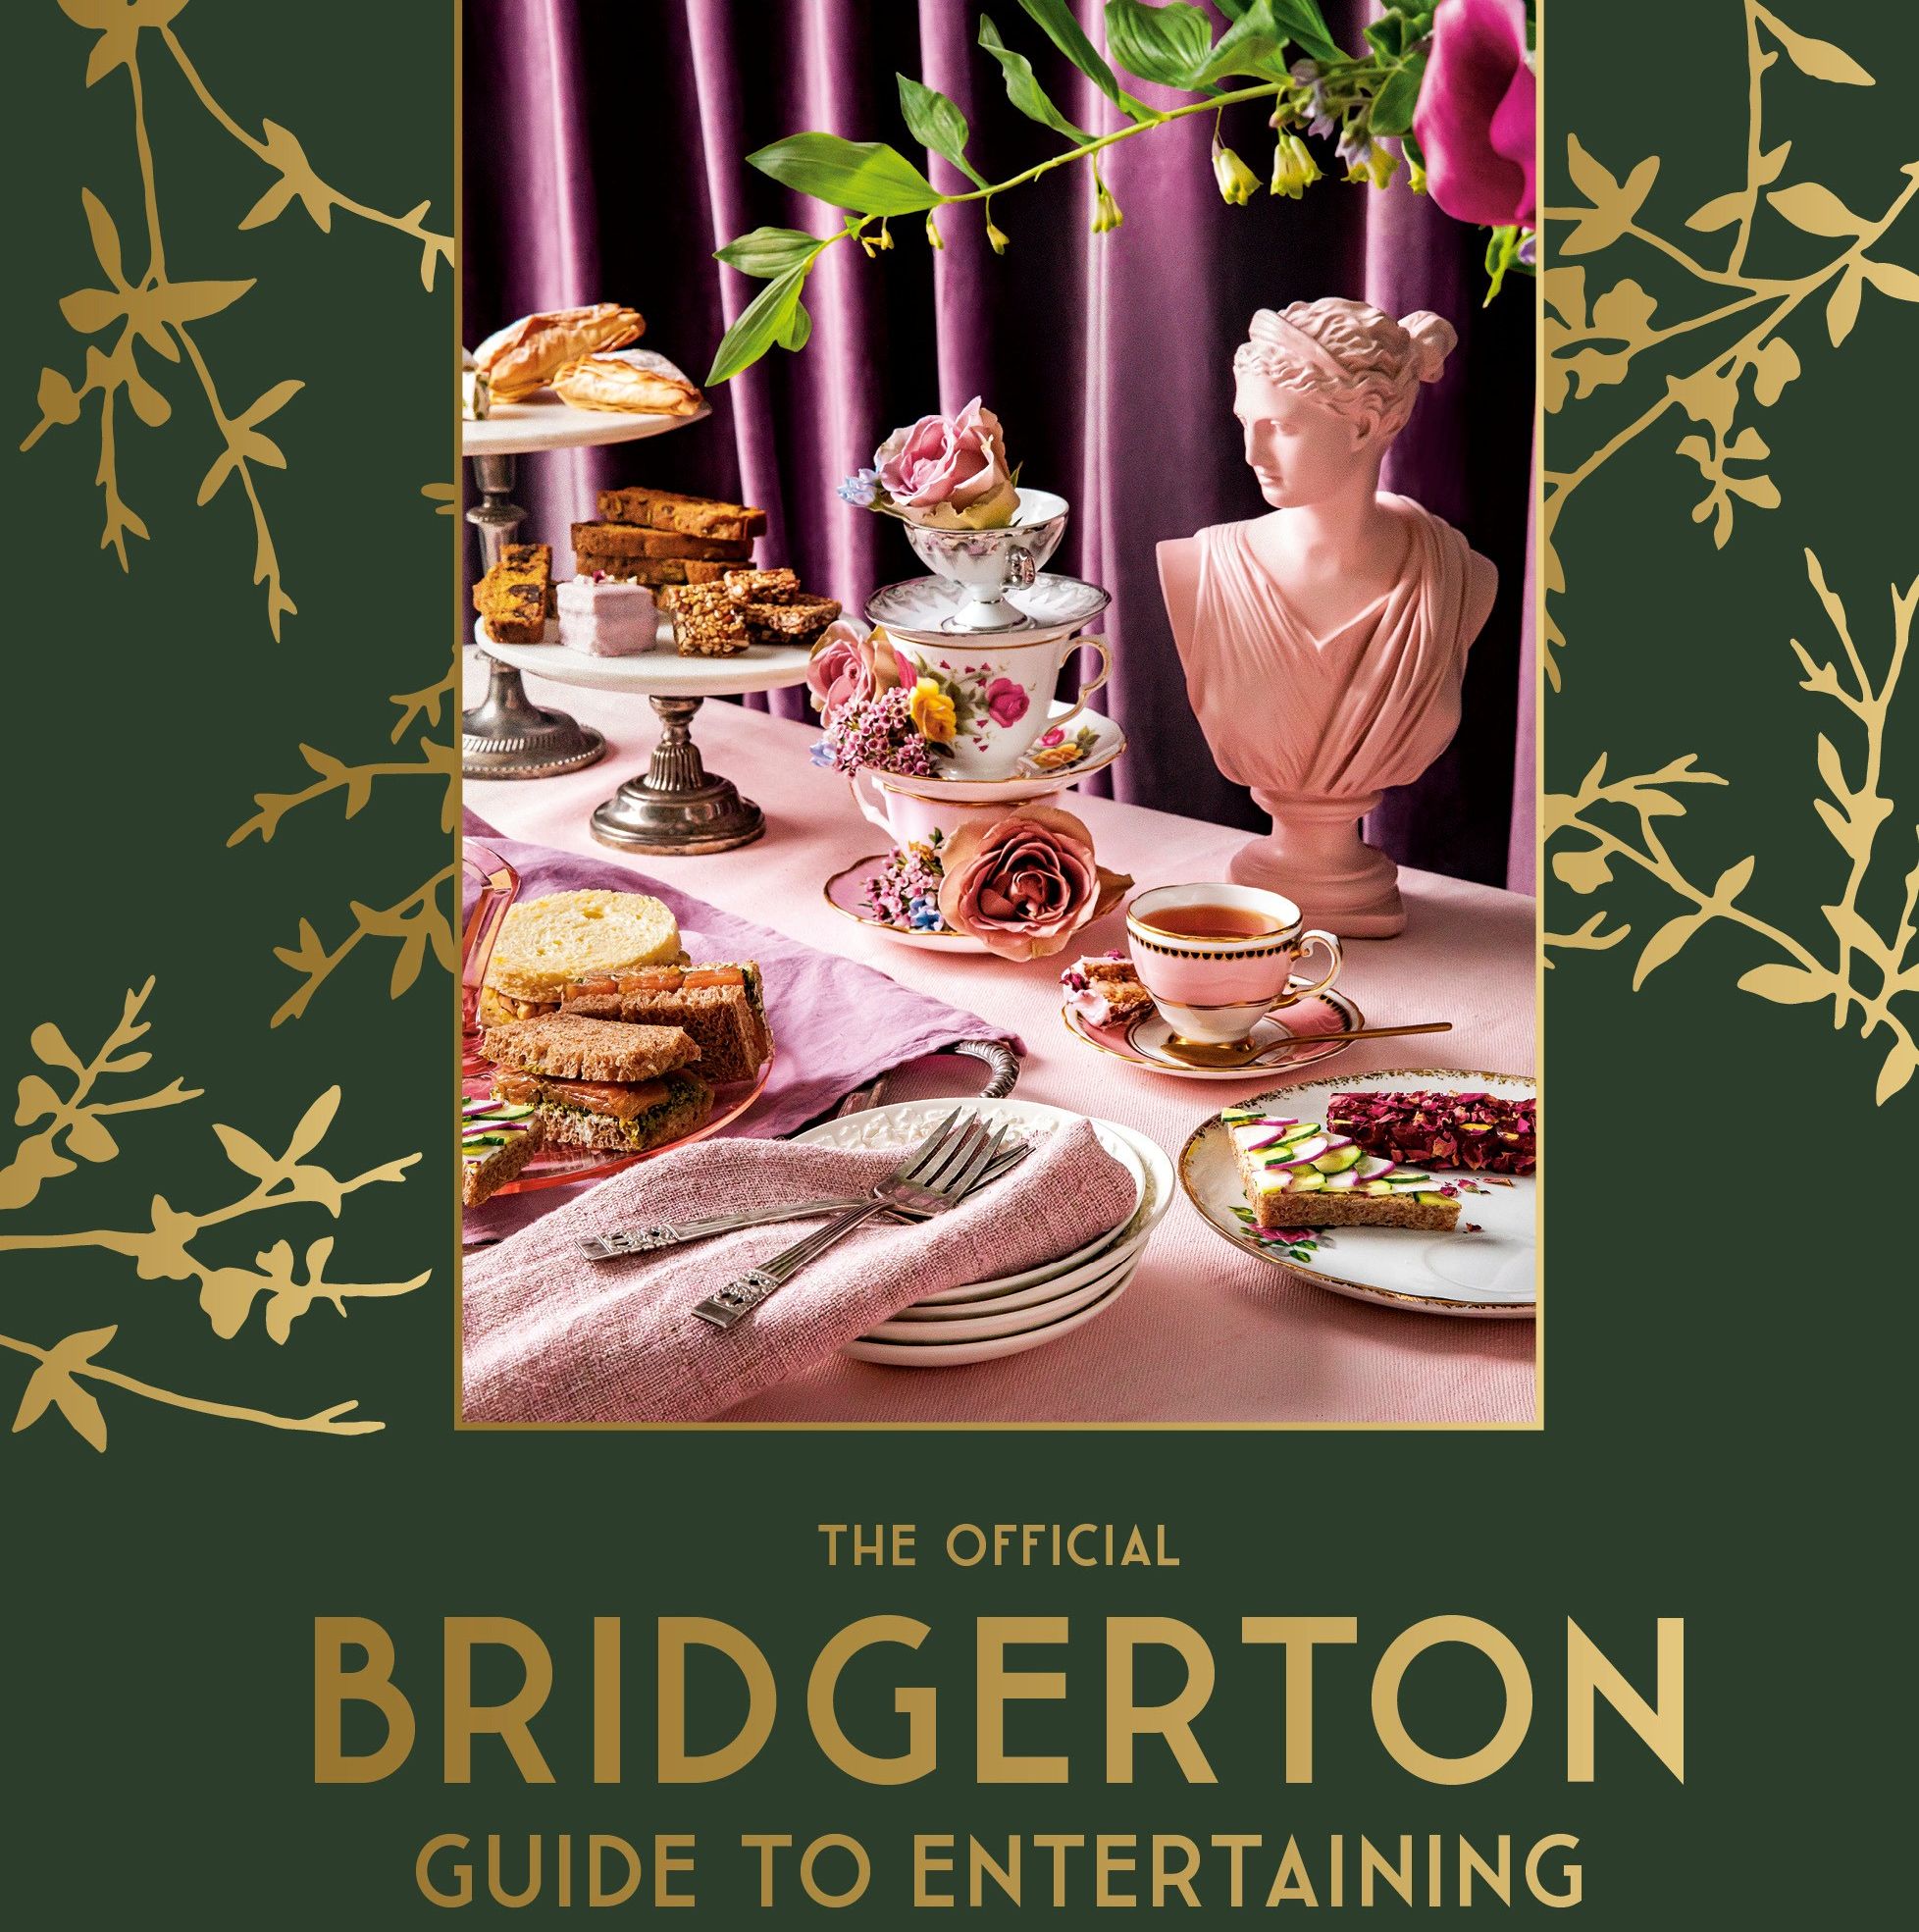 The Official Bridgerton Guide to Entertaining recipes